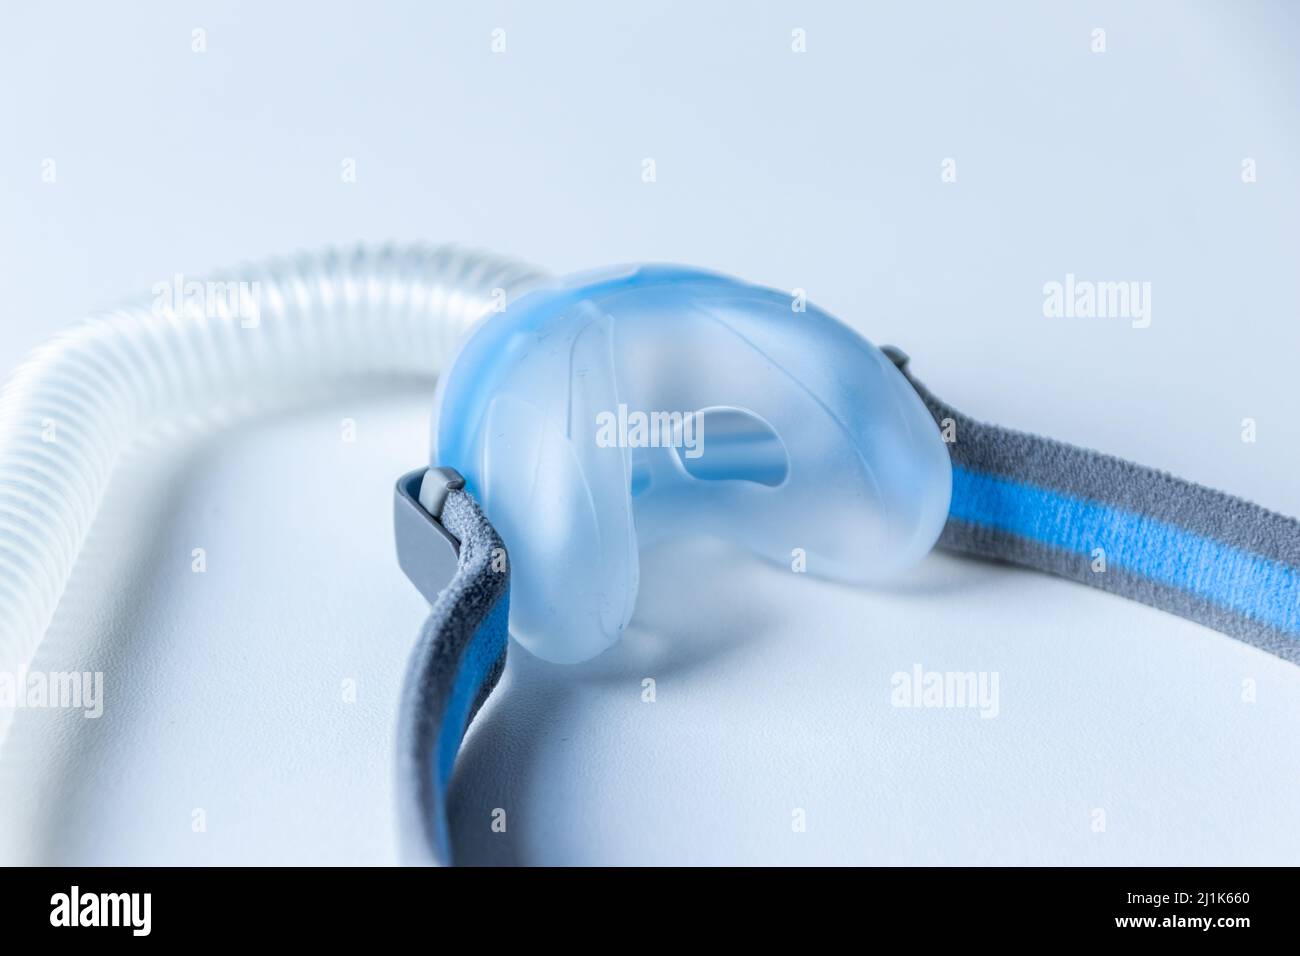 CPAP-Maske gegen obstruktive Schlafapnoe hilft Patienten Atemschutzmaske Kopfbügel für Nase und Rachen Atemmedikamente mit cpap-Gerät Stockfoto